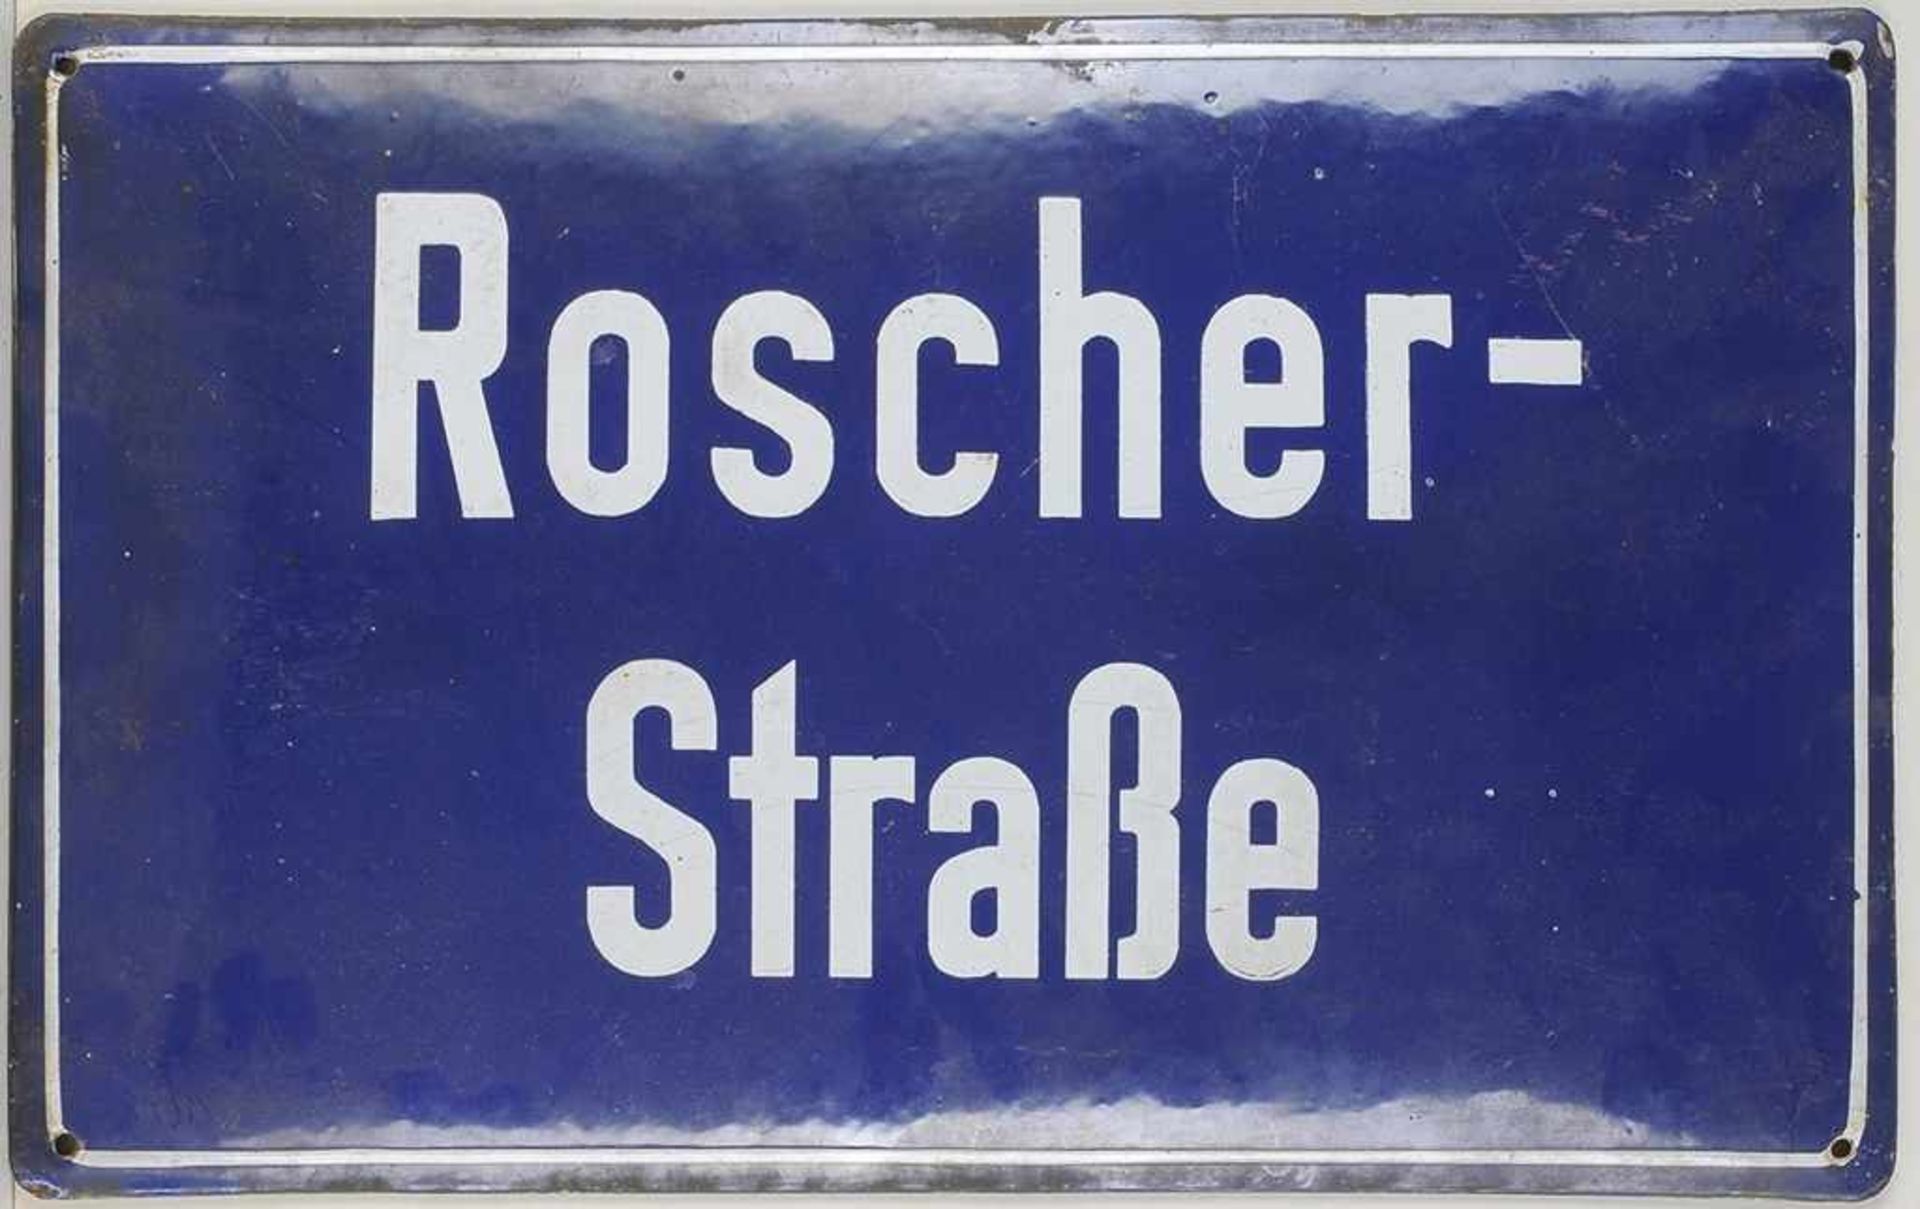 Straßenschild Metall, emailliert. L. gewölbte, querrechteckige Form mit Aufschrift "Roscher-Straße".